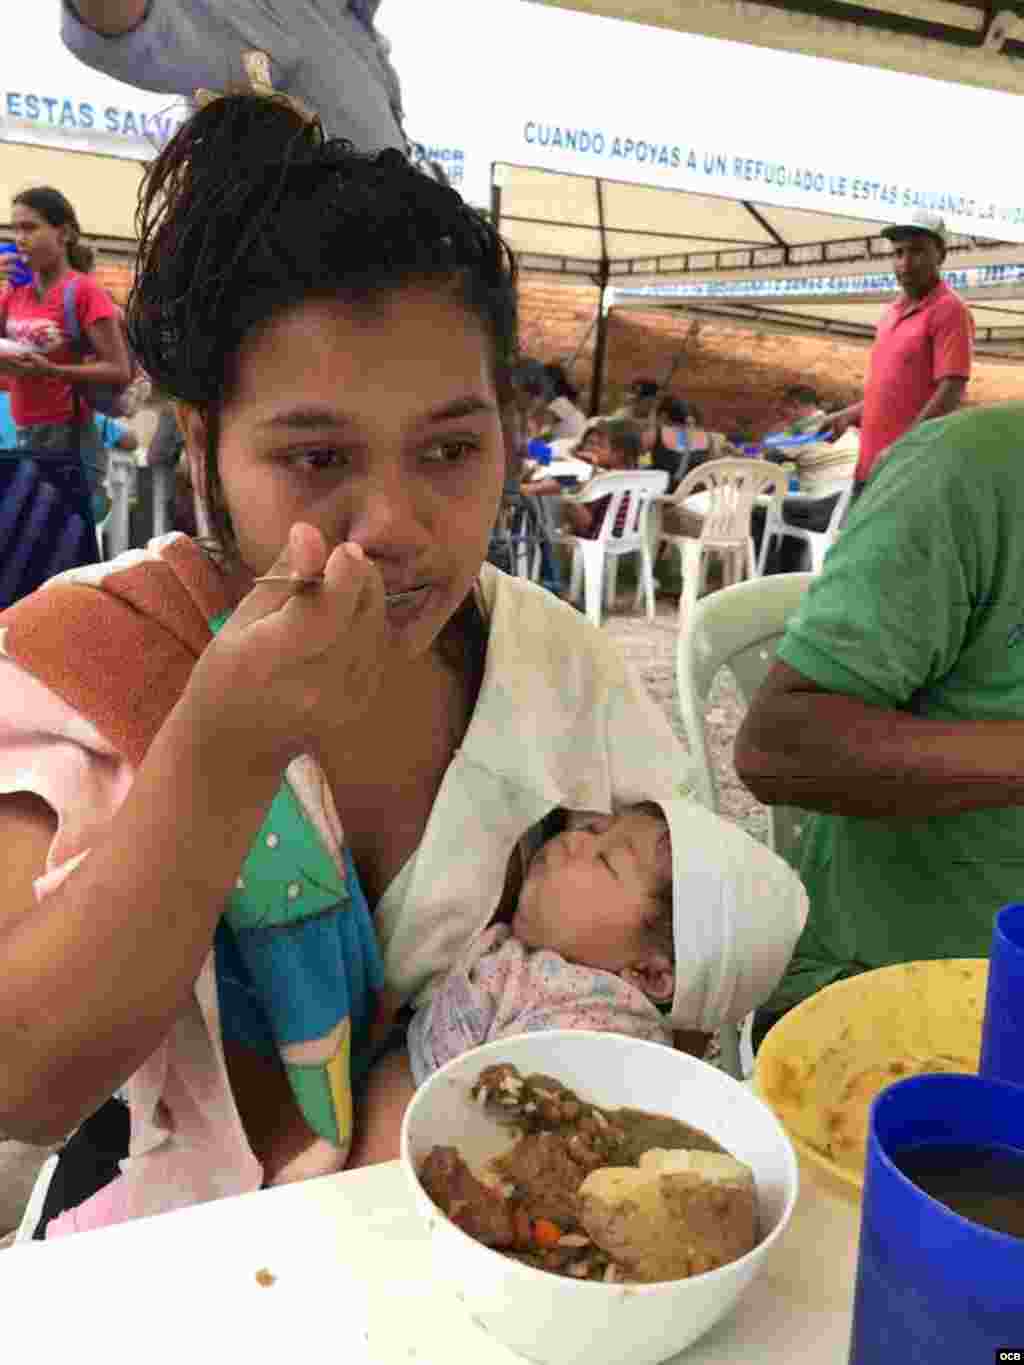 Casa de Paso “Divina Providencia“, donde se distribuyen más de 4 mil comidas a los venezolanos en Cúcuta gracias a la ayuda humanitaria.